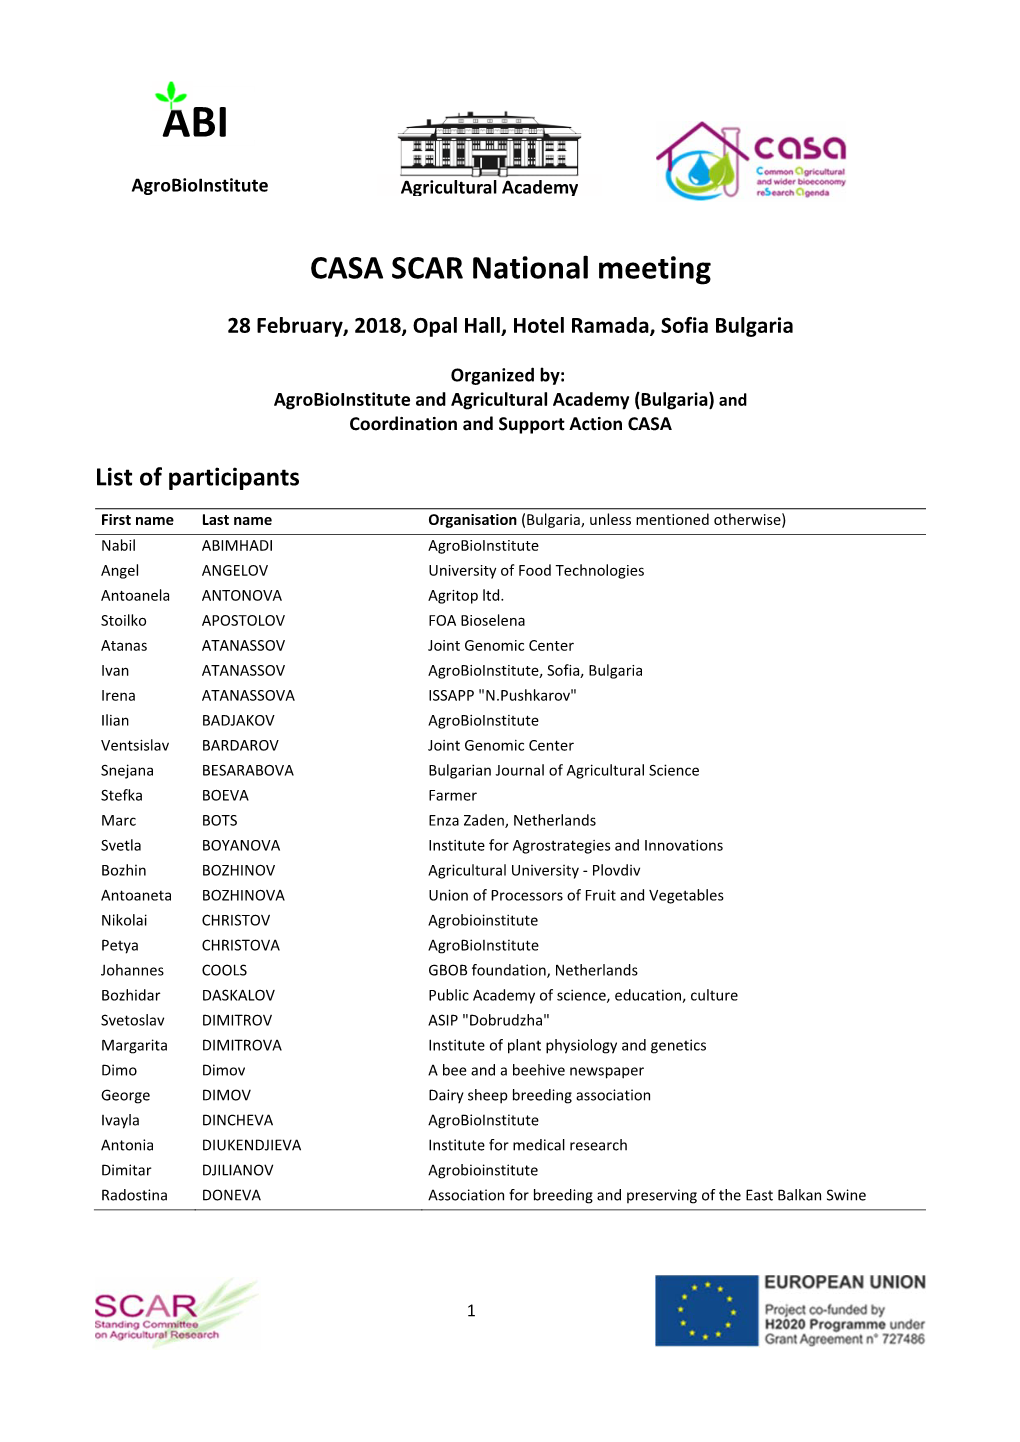 CASA SCAR National Meeting